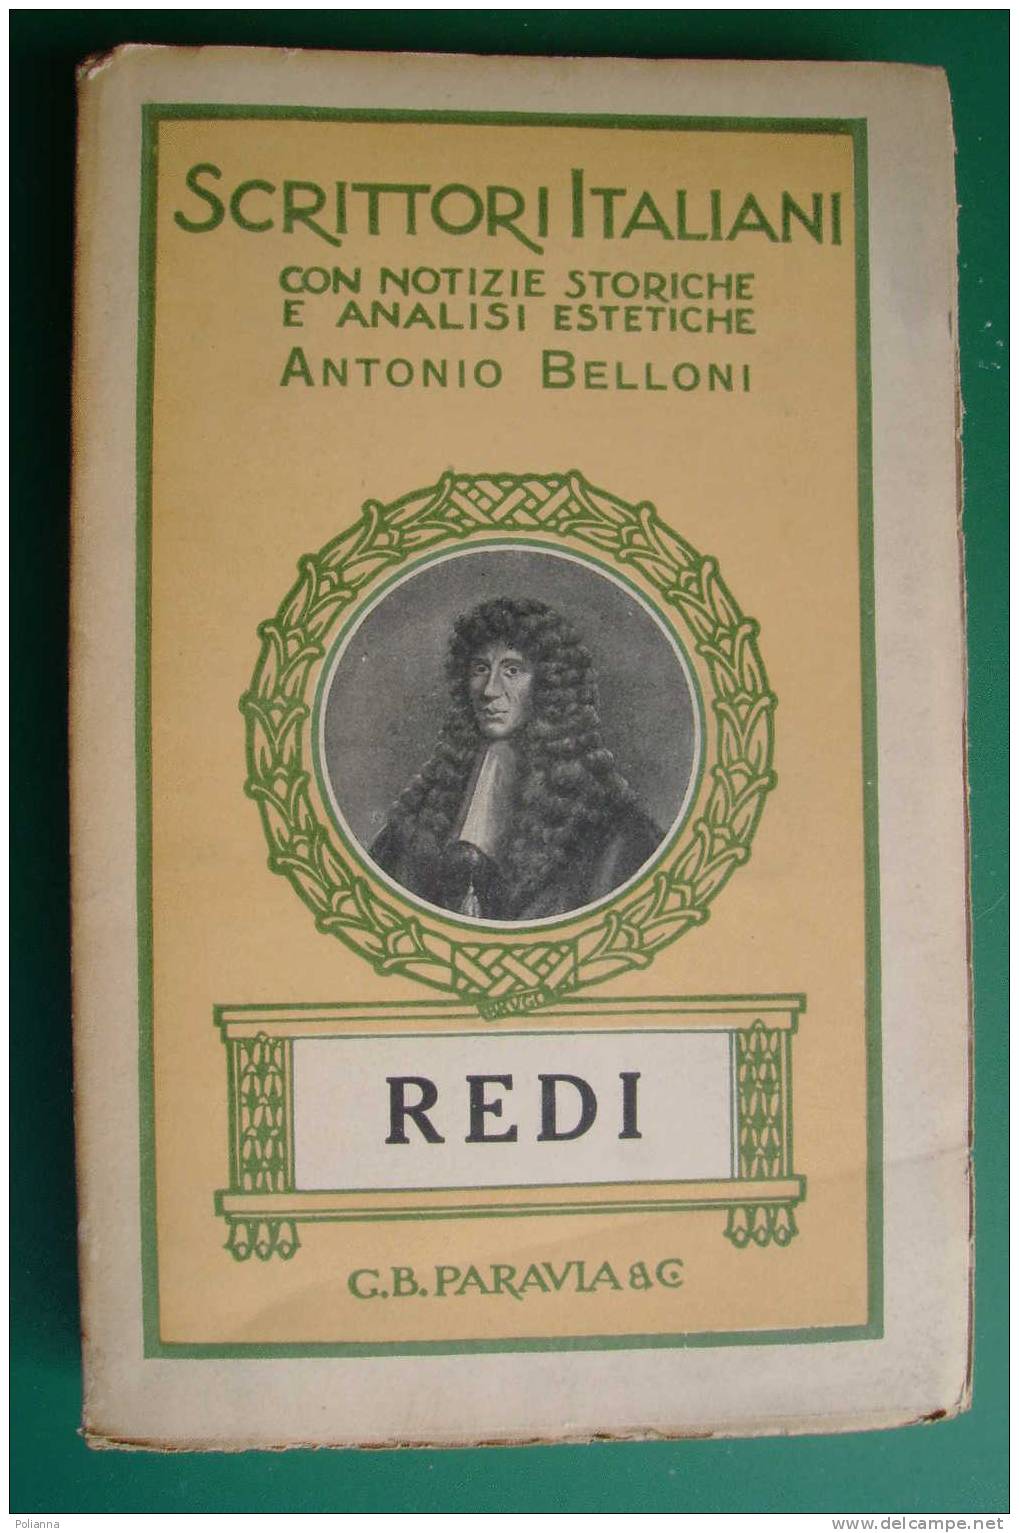 PDD/34 Scrittori Italiani - Antonio Belloni - FRANCESCO REDI  Paravia 1931 - Old